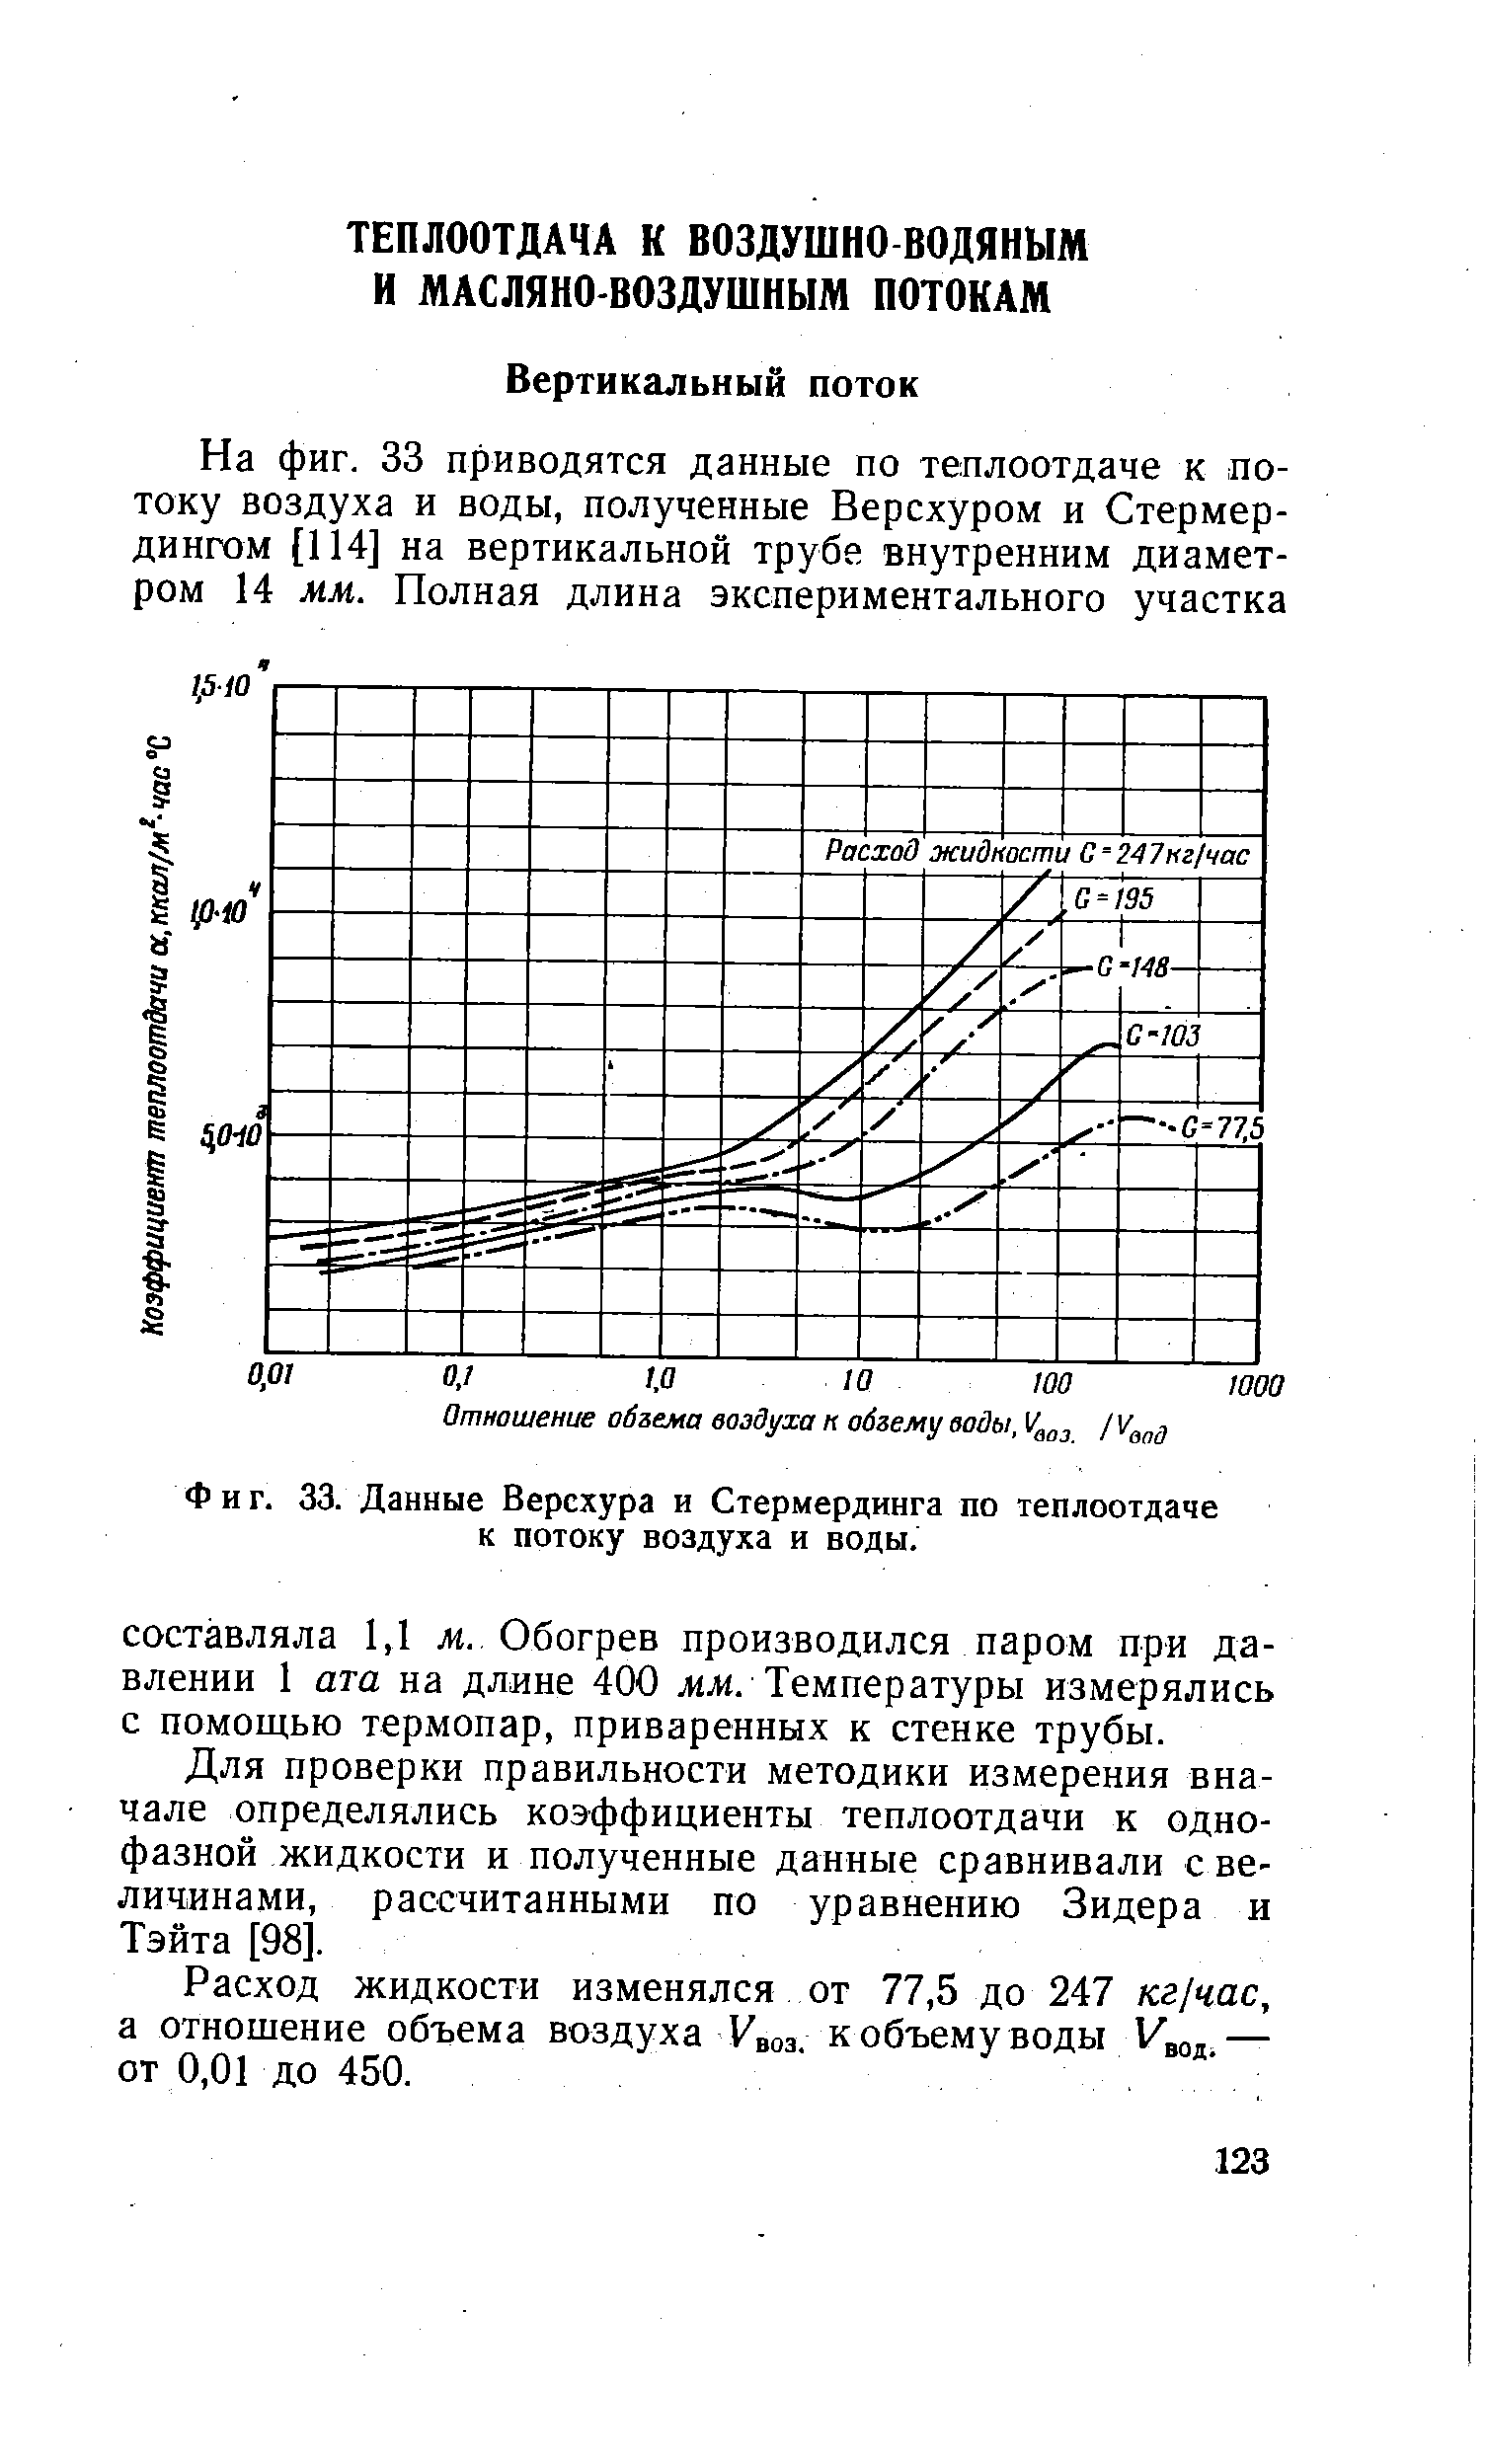 Для проверки правильности методики измерения вначале определялись коэффициенты теплоотдачи к однофазной жидкости и полученные данные сравнивали с величинами, рассчитанными по уравнению Зидера и Тэйта [98].